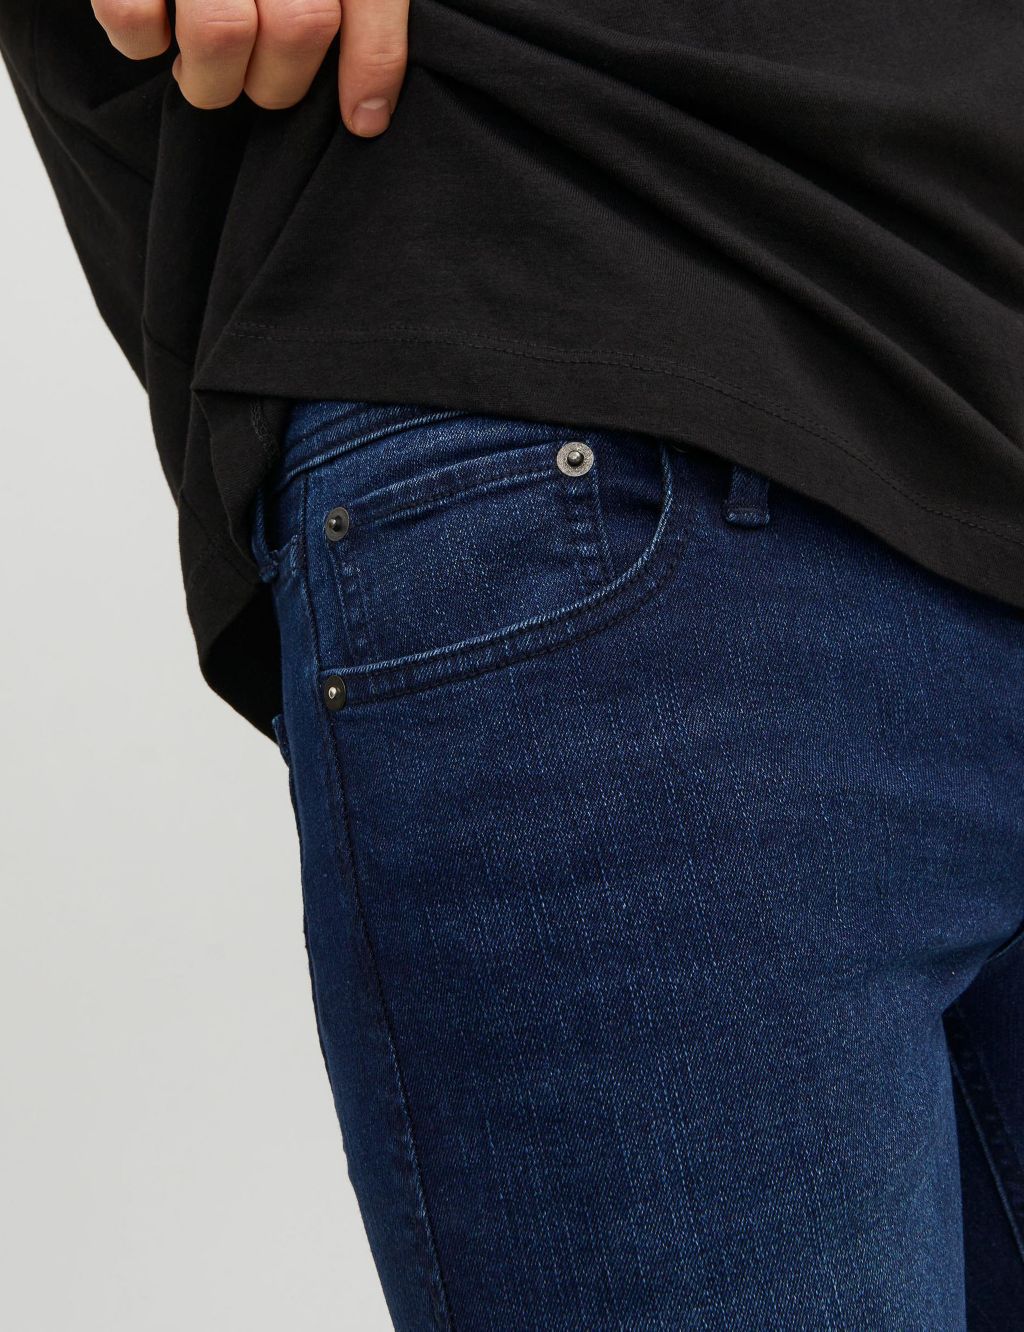 Slim Fit 5 Pocket Jeans image 6